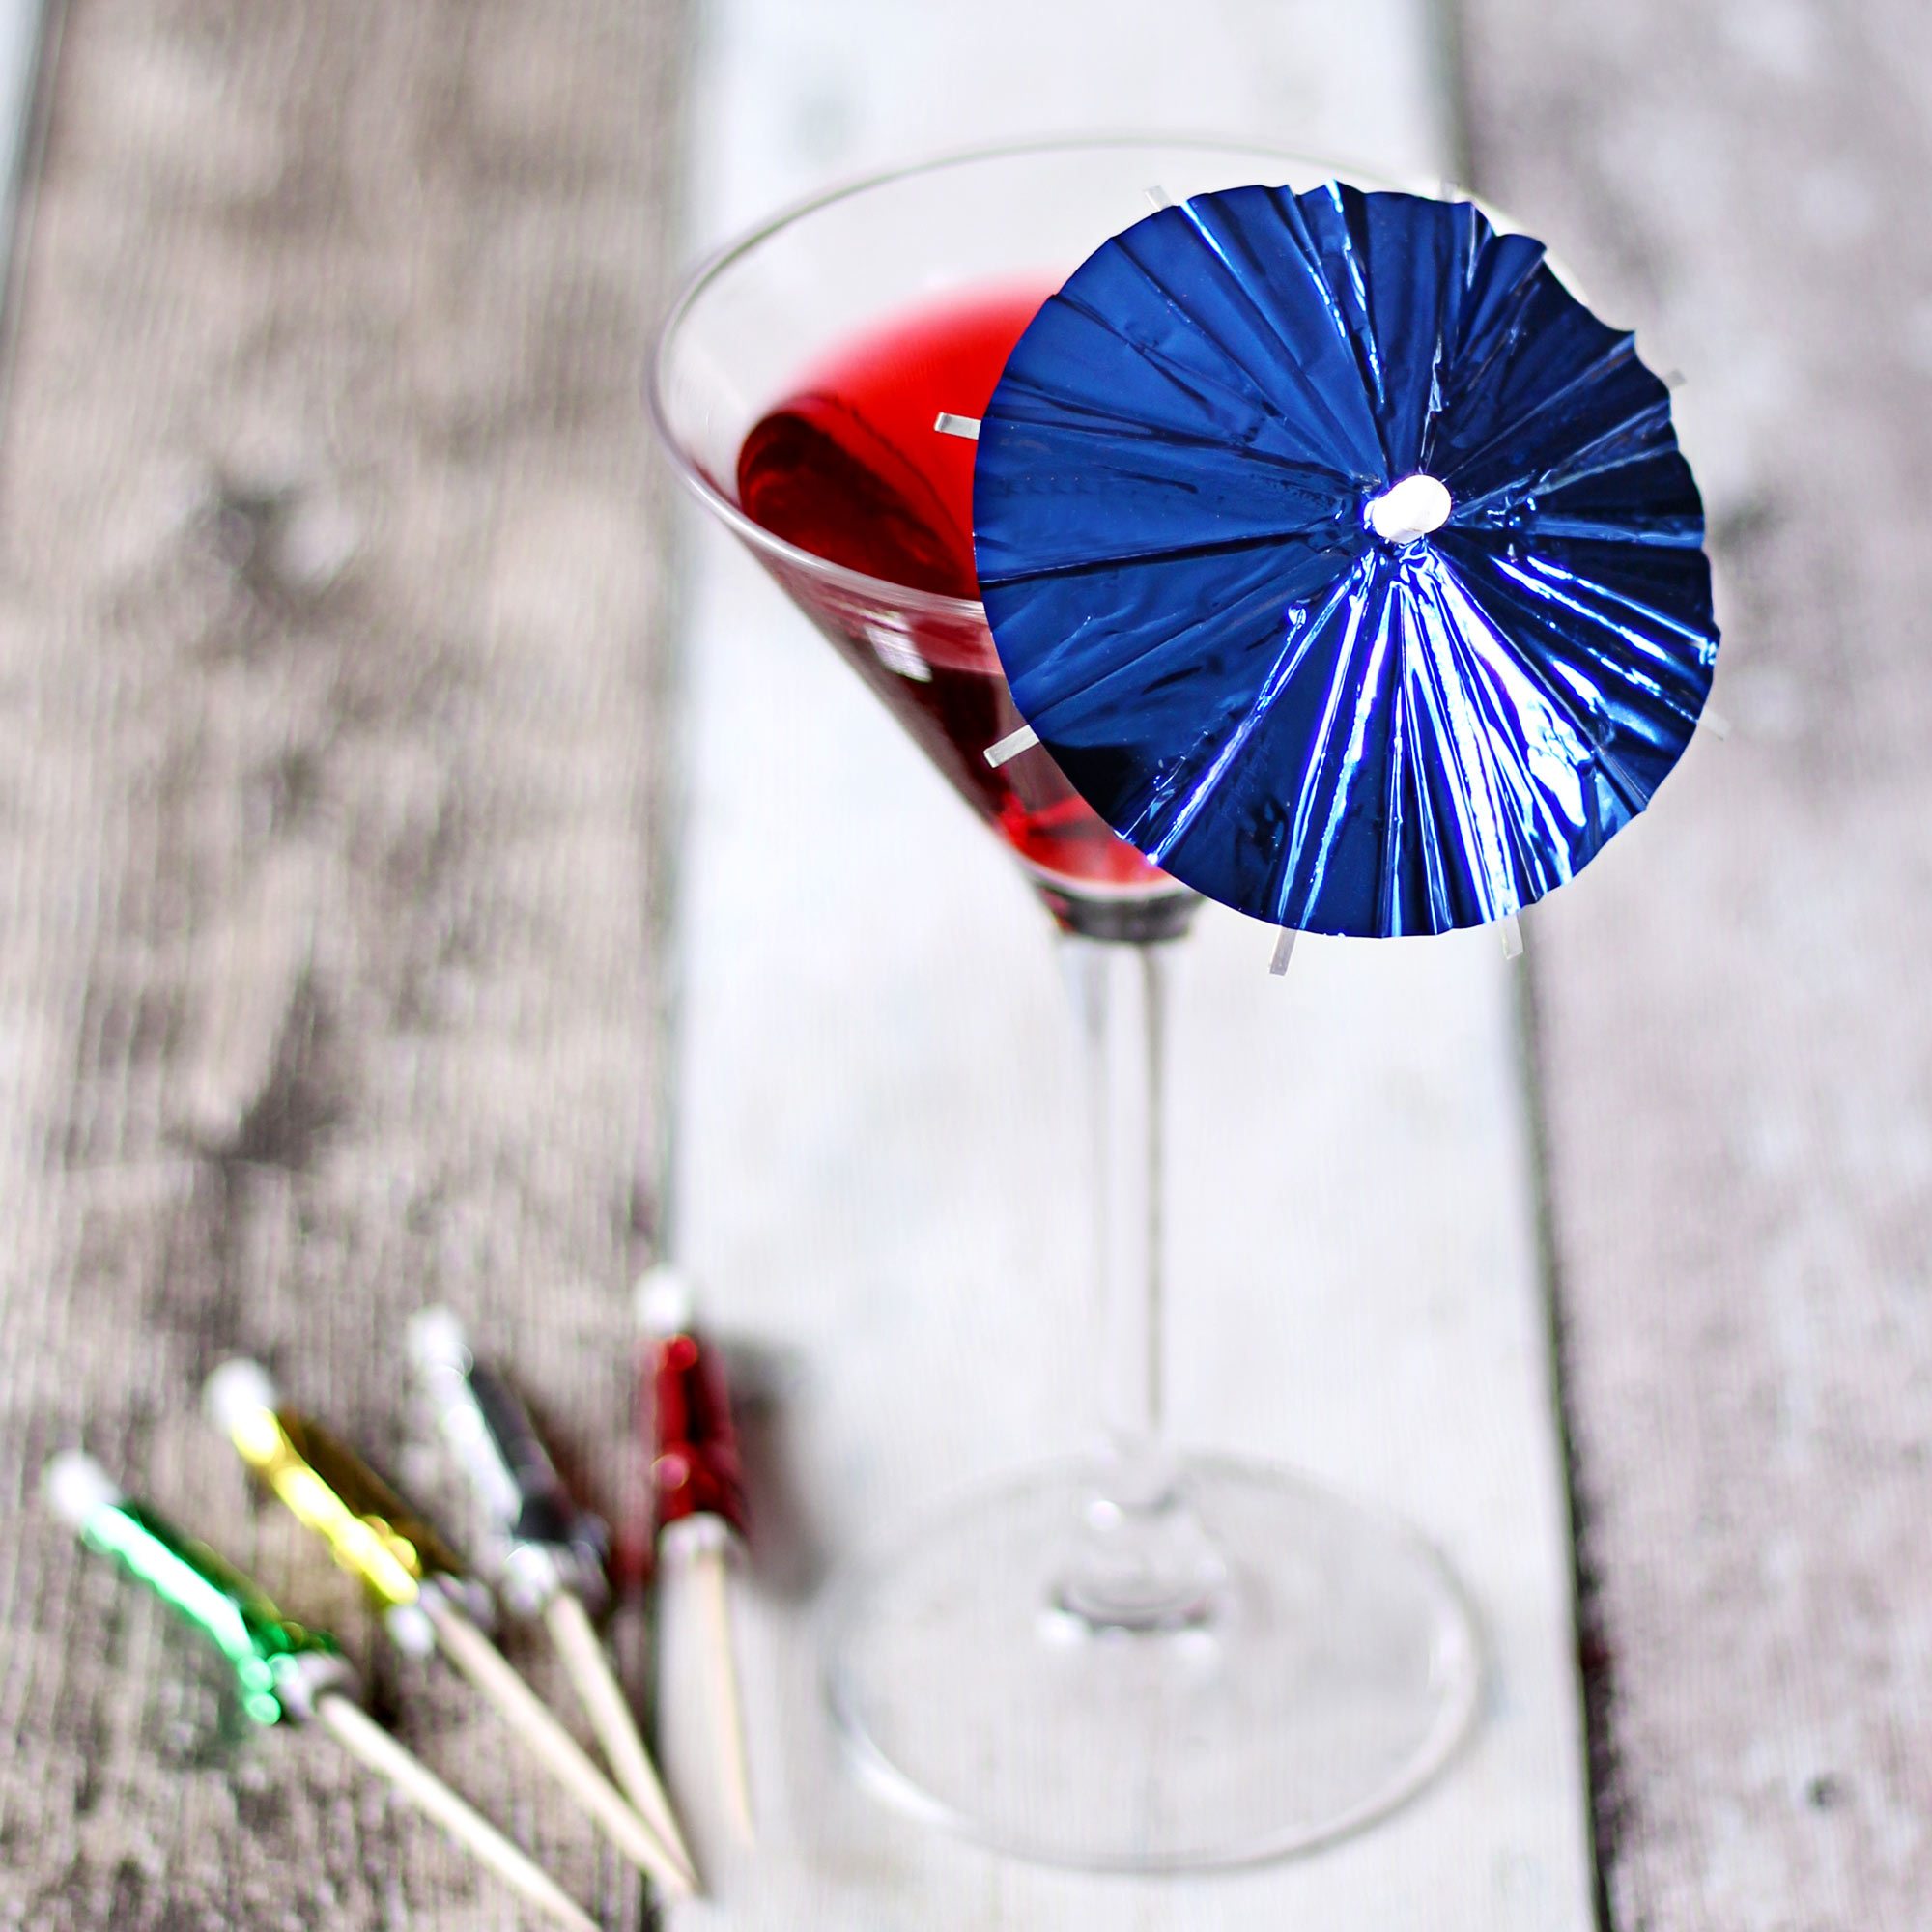 Cocktail umbrella photo